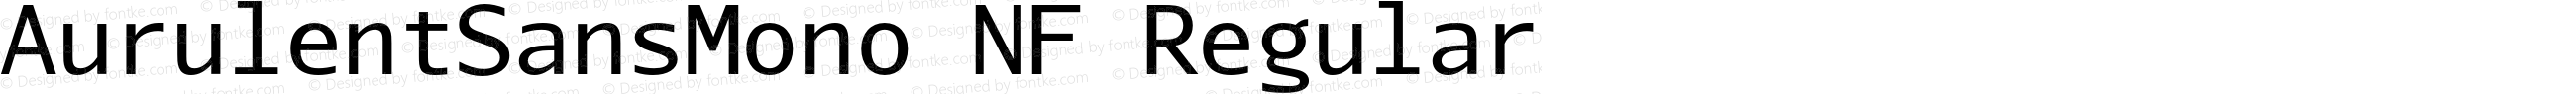 AurulentSansMono-Regular Nerd Font Plus Font Awesome Plus Octicons Plus Pomicons Mono Windows Compatible